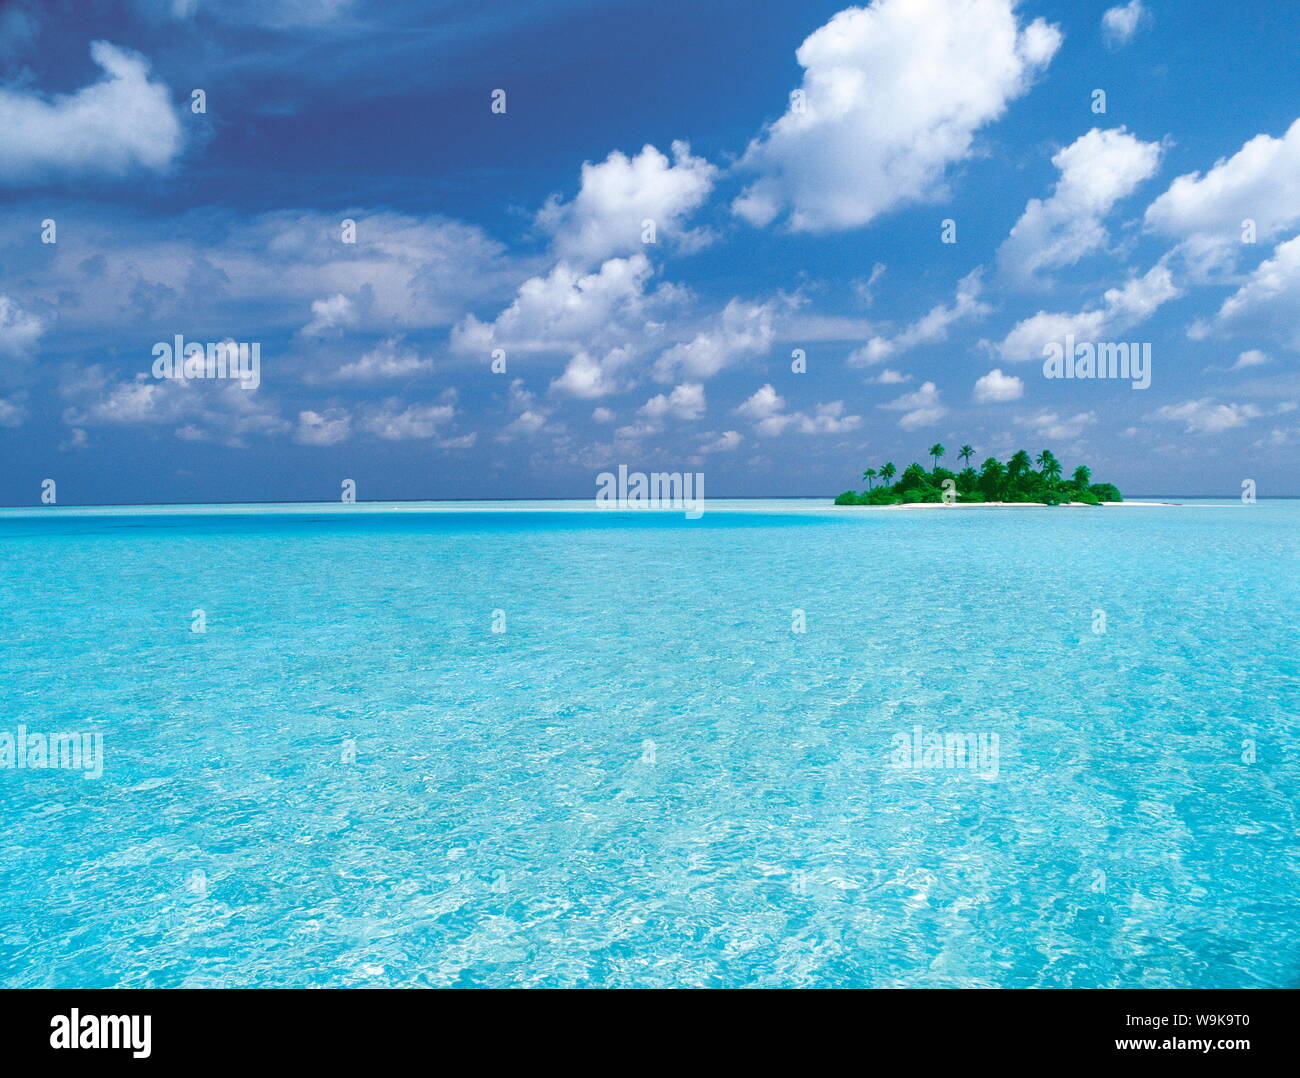 Île tropicale entourée de lagon, Maldives, océan Indien, Asie Banque D'Images